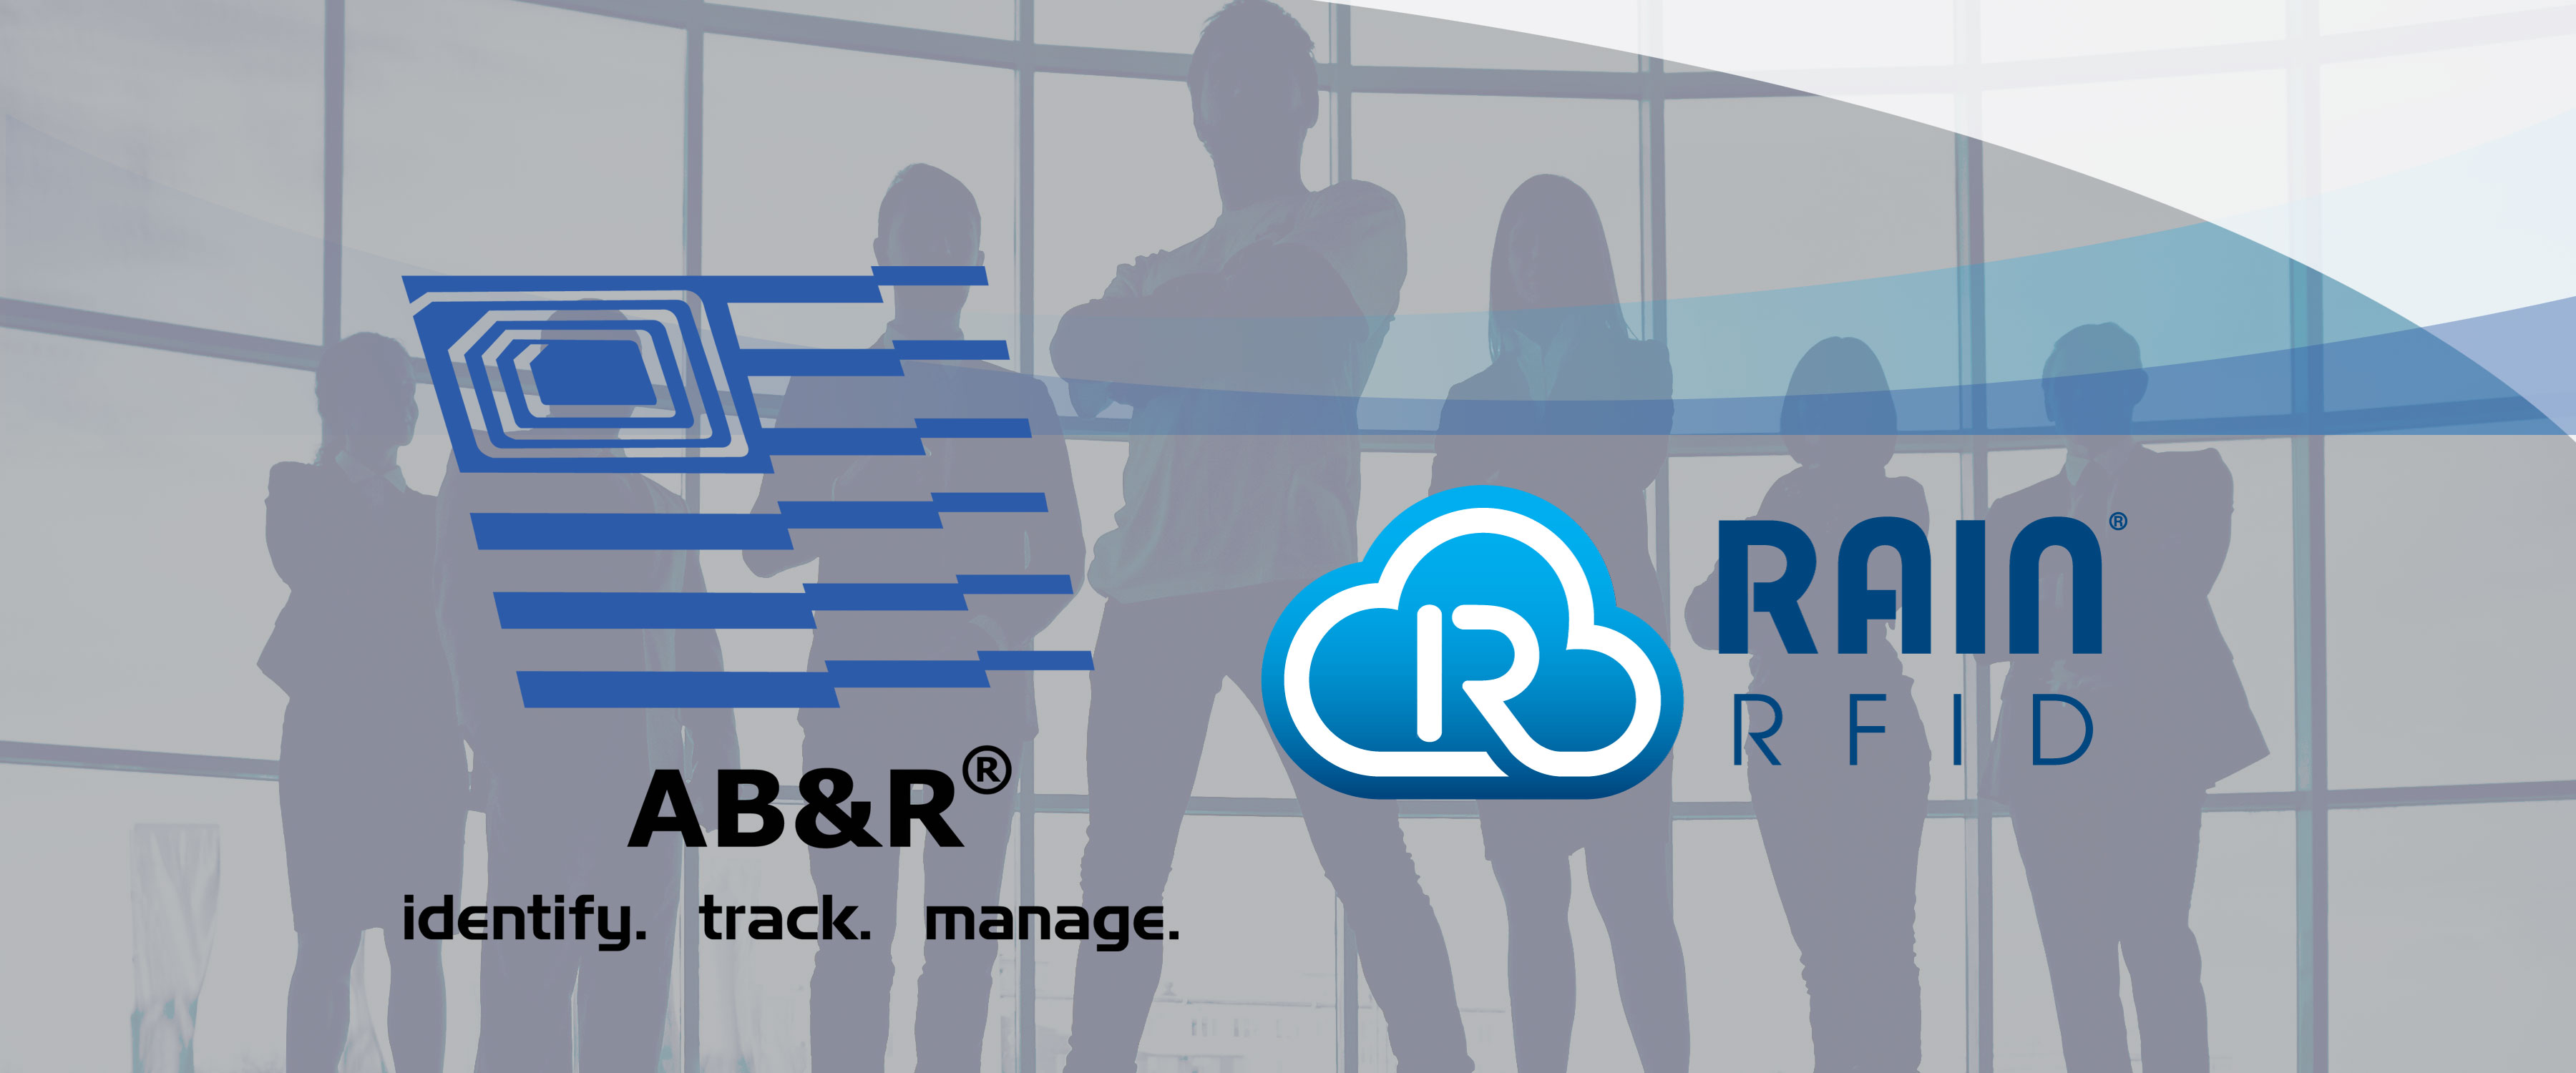 AB&R® joins RAIN RFID alliance